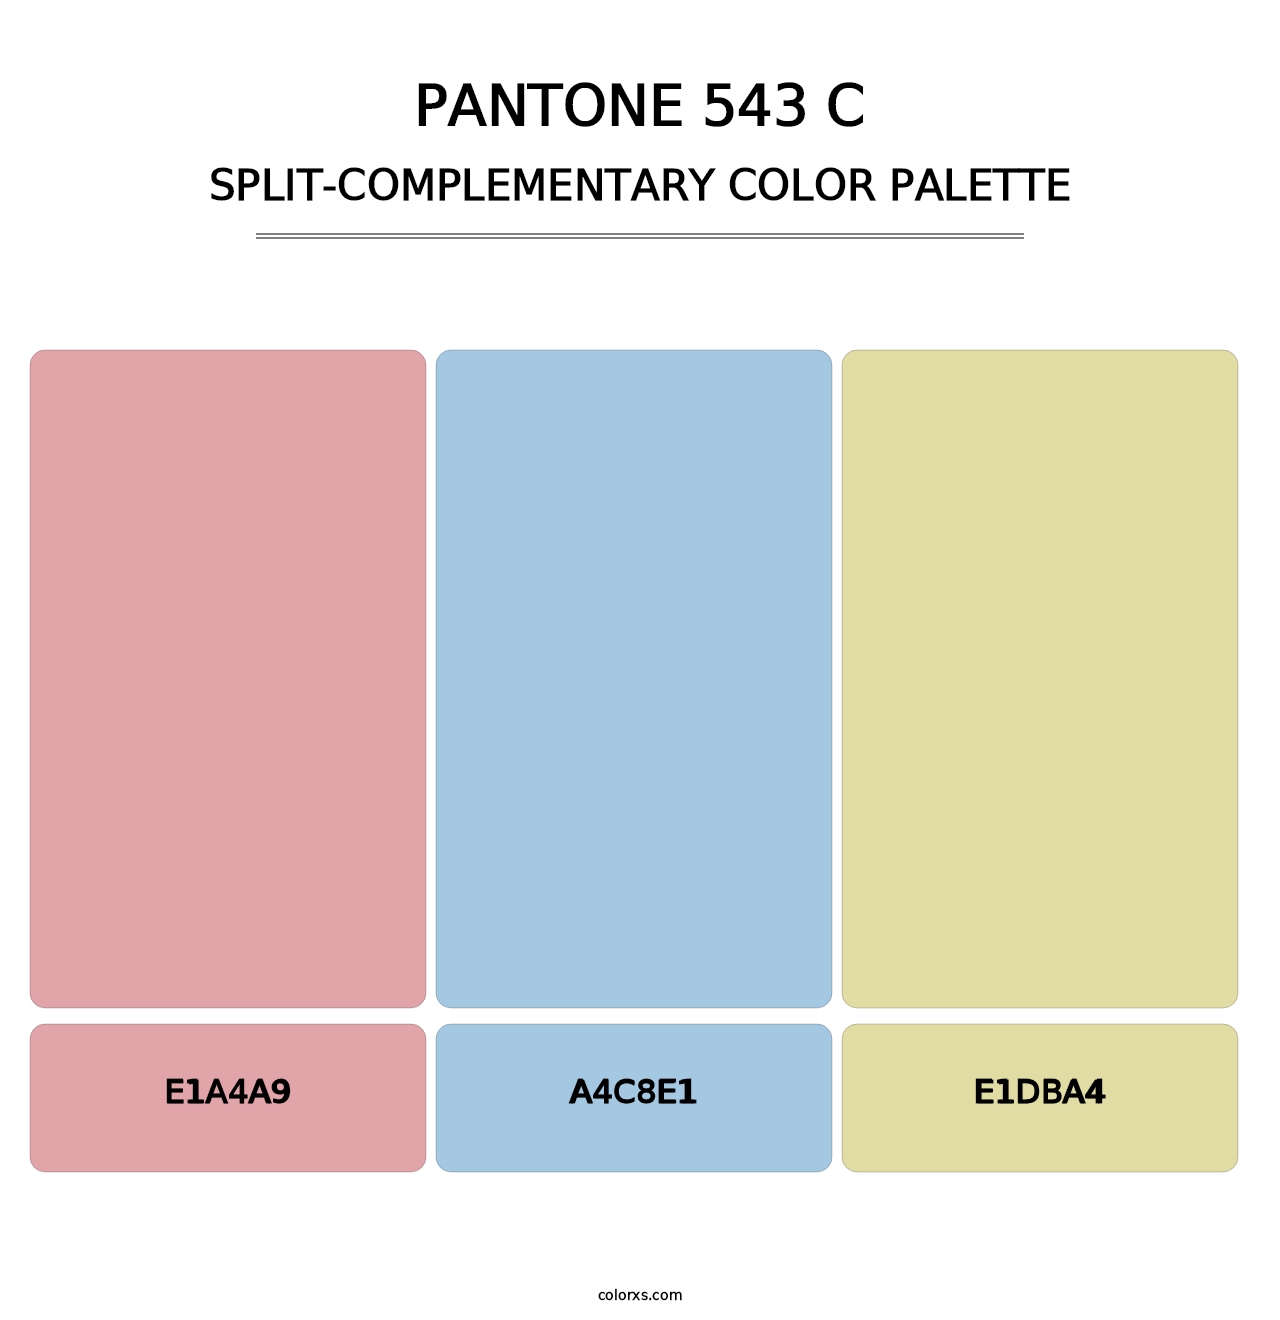 PANTONE 543 C - Split-Complementary Color Palette